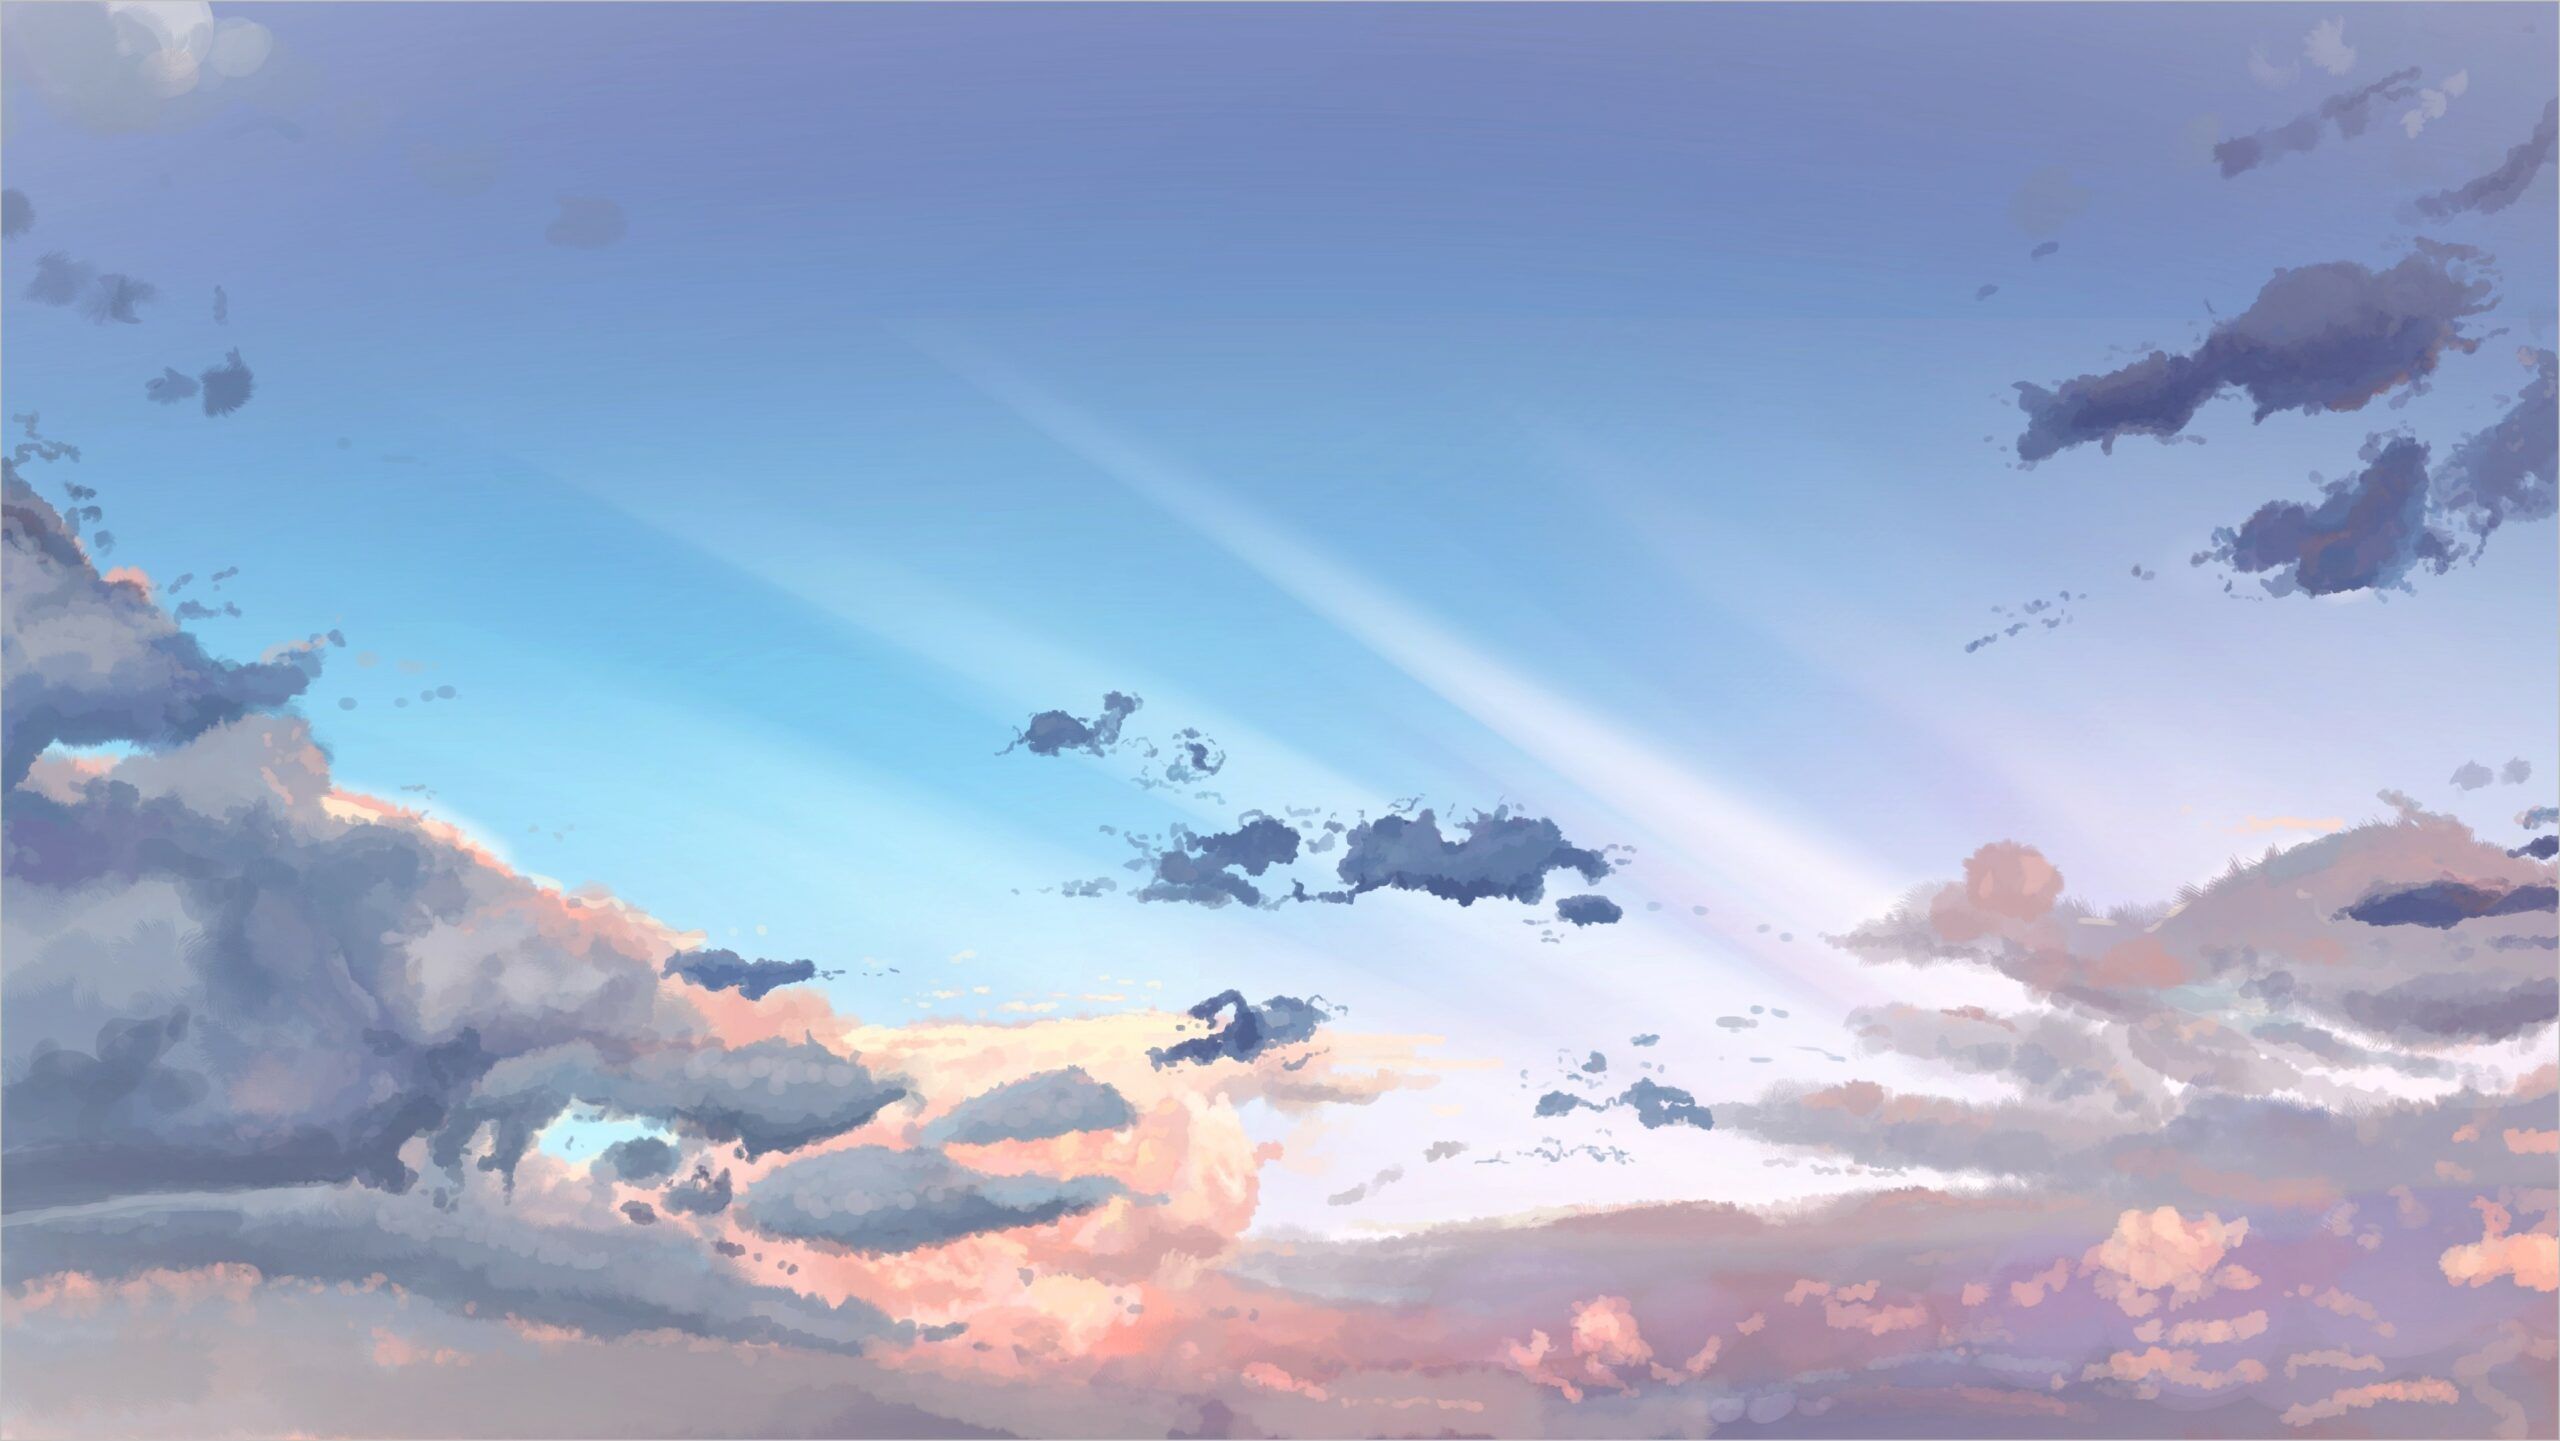 Anime Wallpaper 4k Sky. Sky anime, Anime wallpaper, Night sky wallpaper